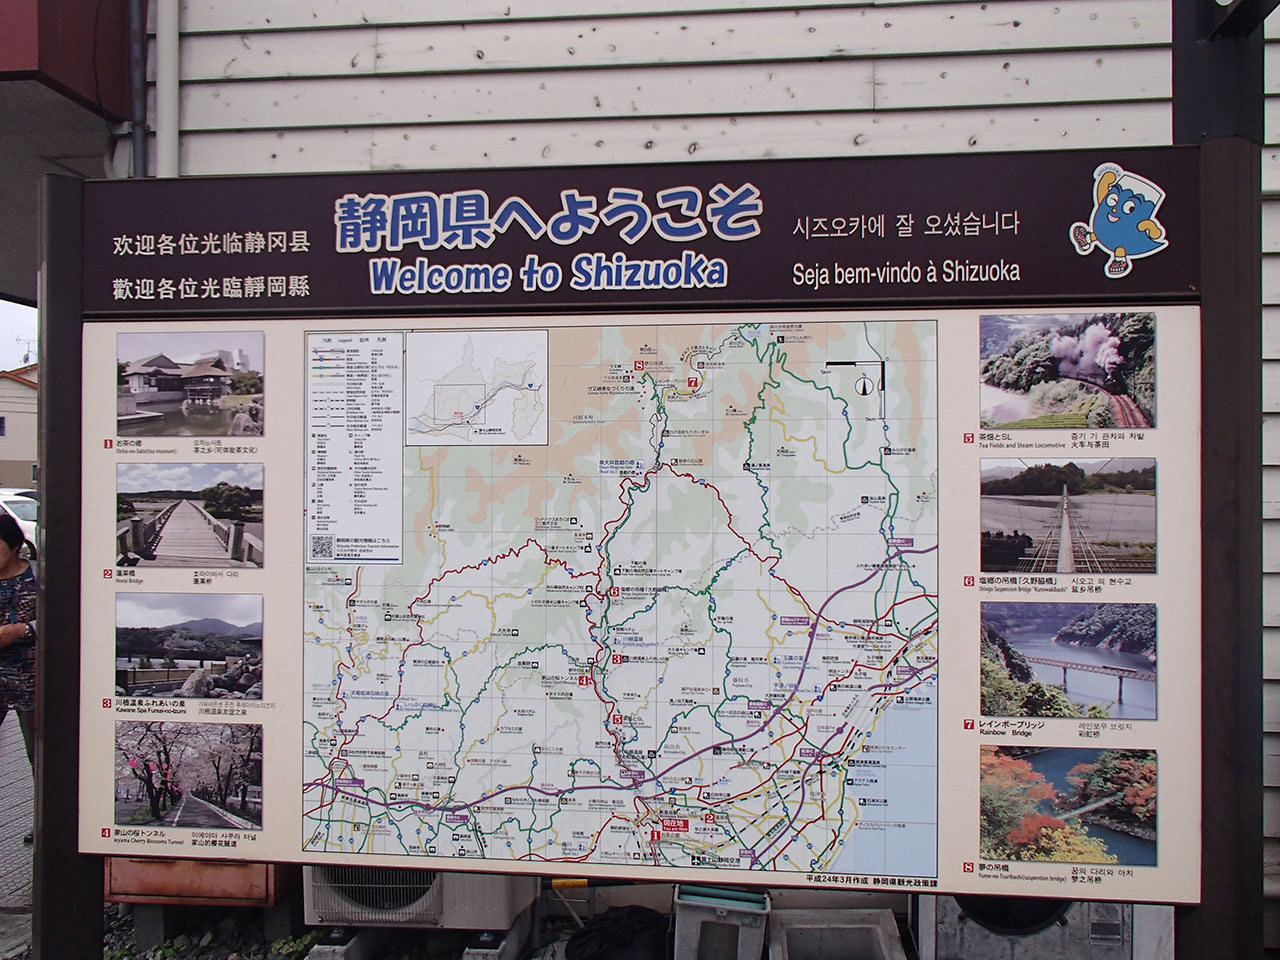 会員親睦旅行～大井川鐡道乗車と大トロコース満喫日帰りバスの旅～